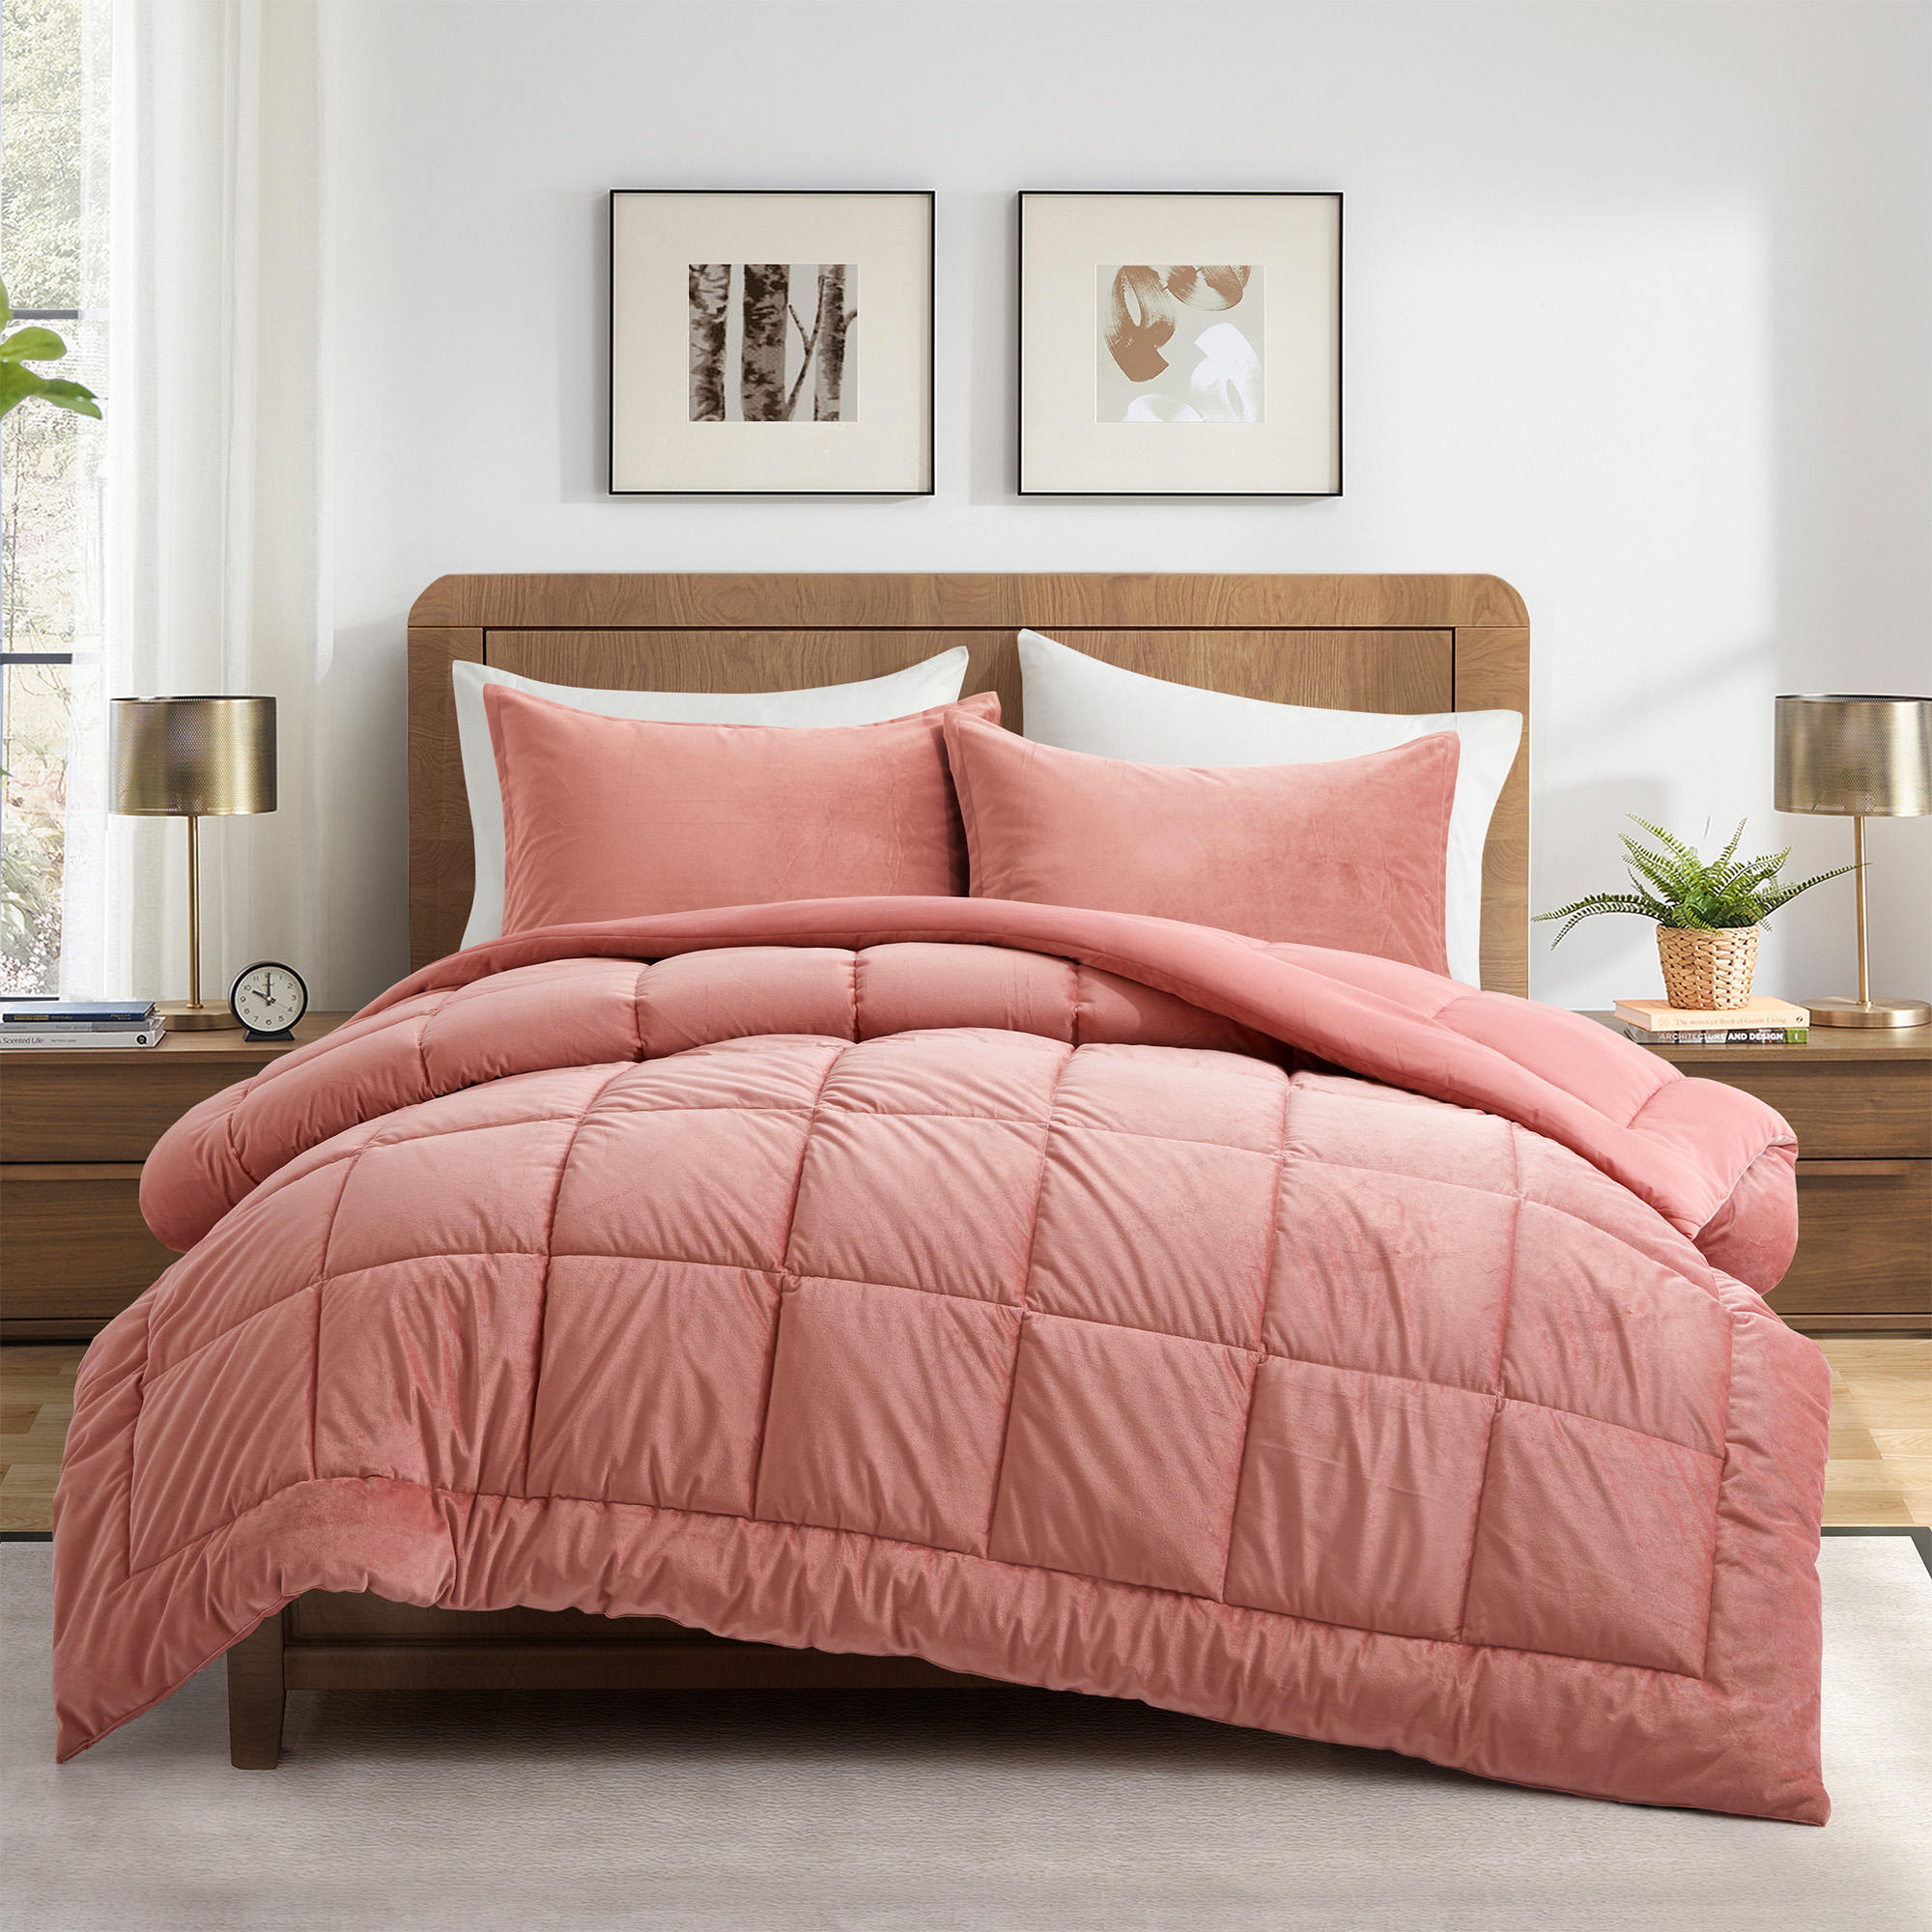 3 Piece Reversible Velvet Comforter Set With Sham - Pink, Full/Queen